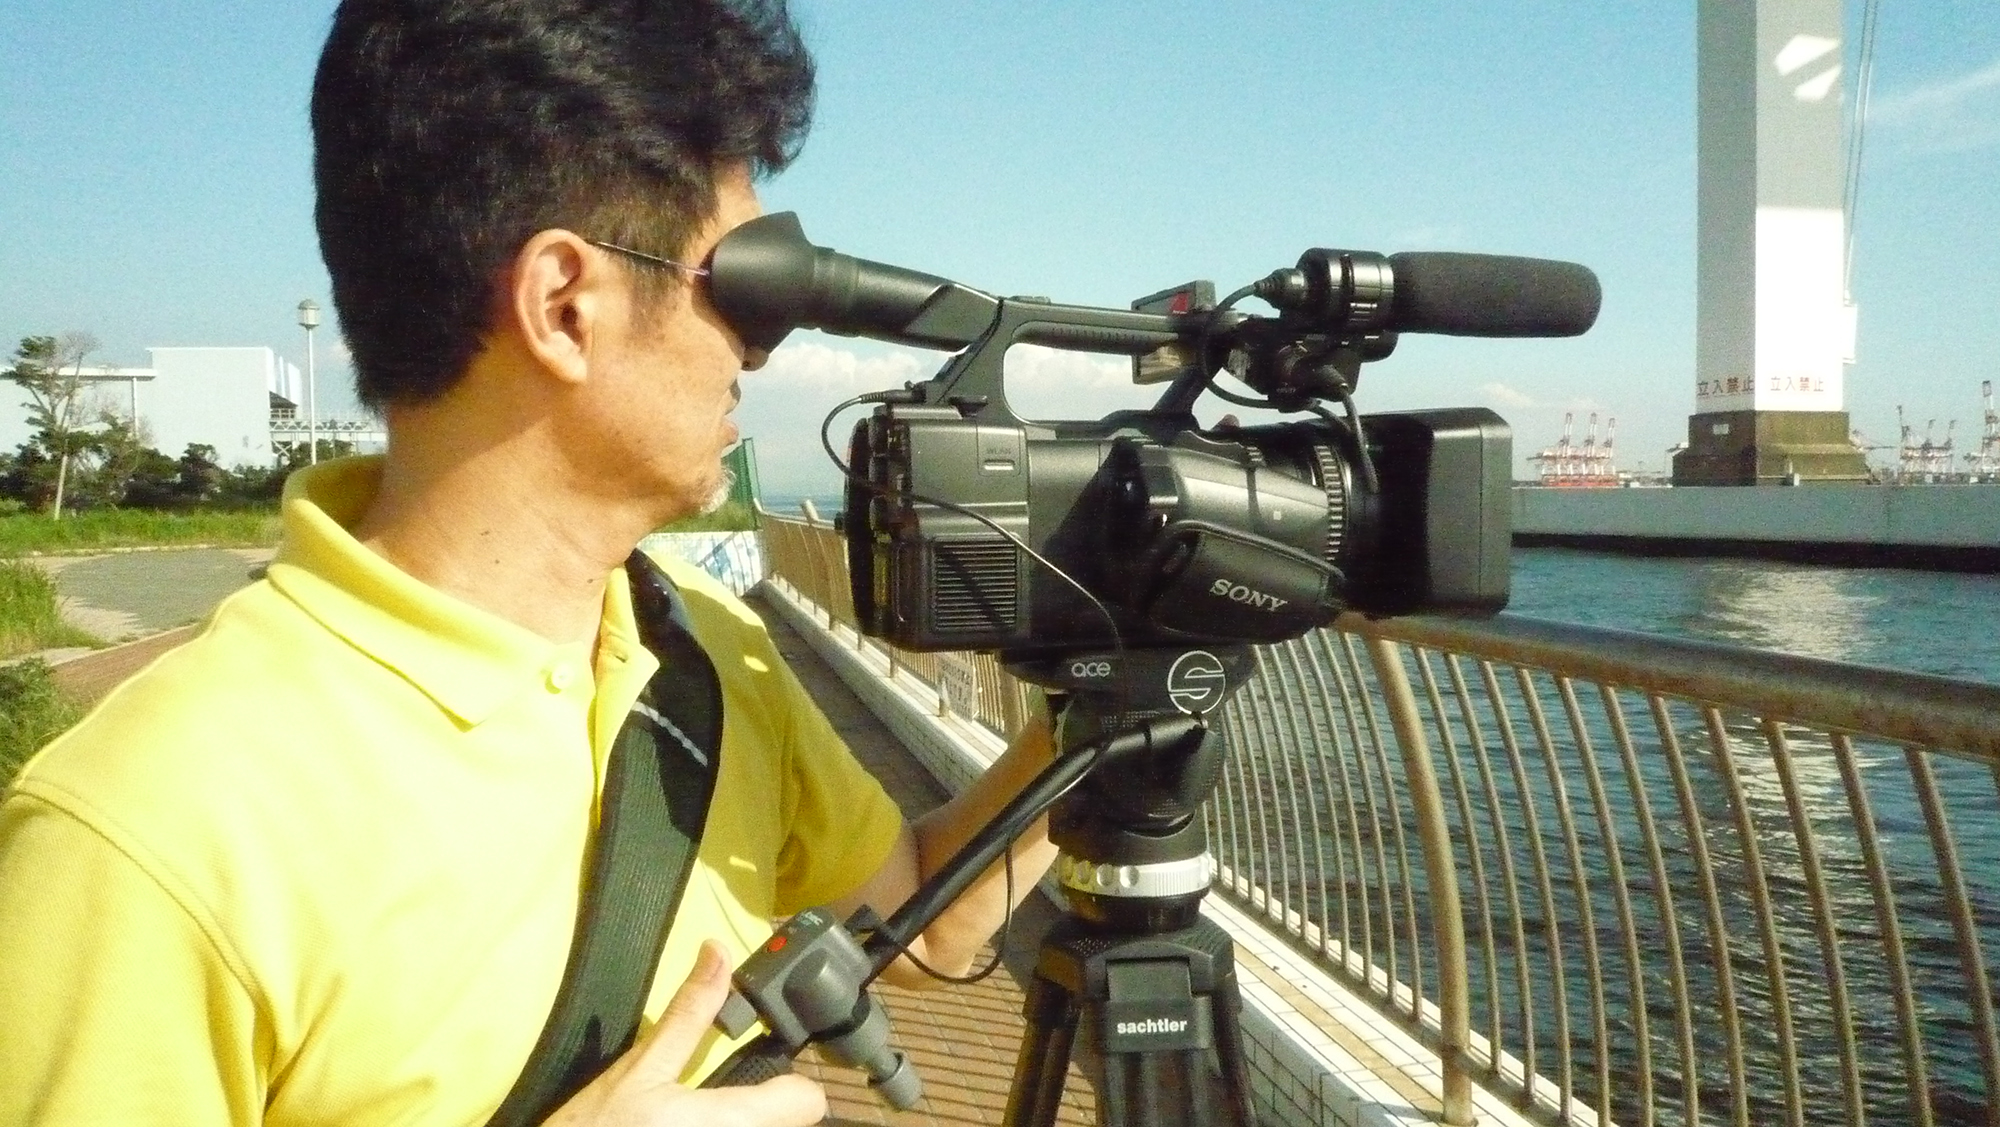 SONY PXW X180 プロ用ビデオカメラ(XD Cam)